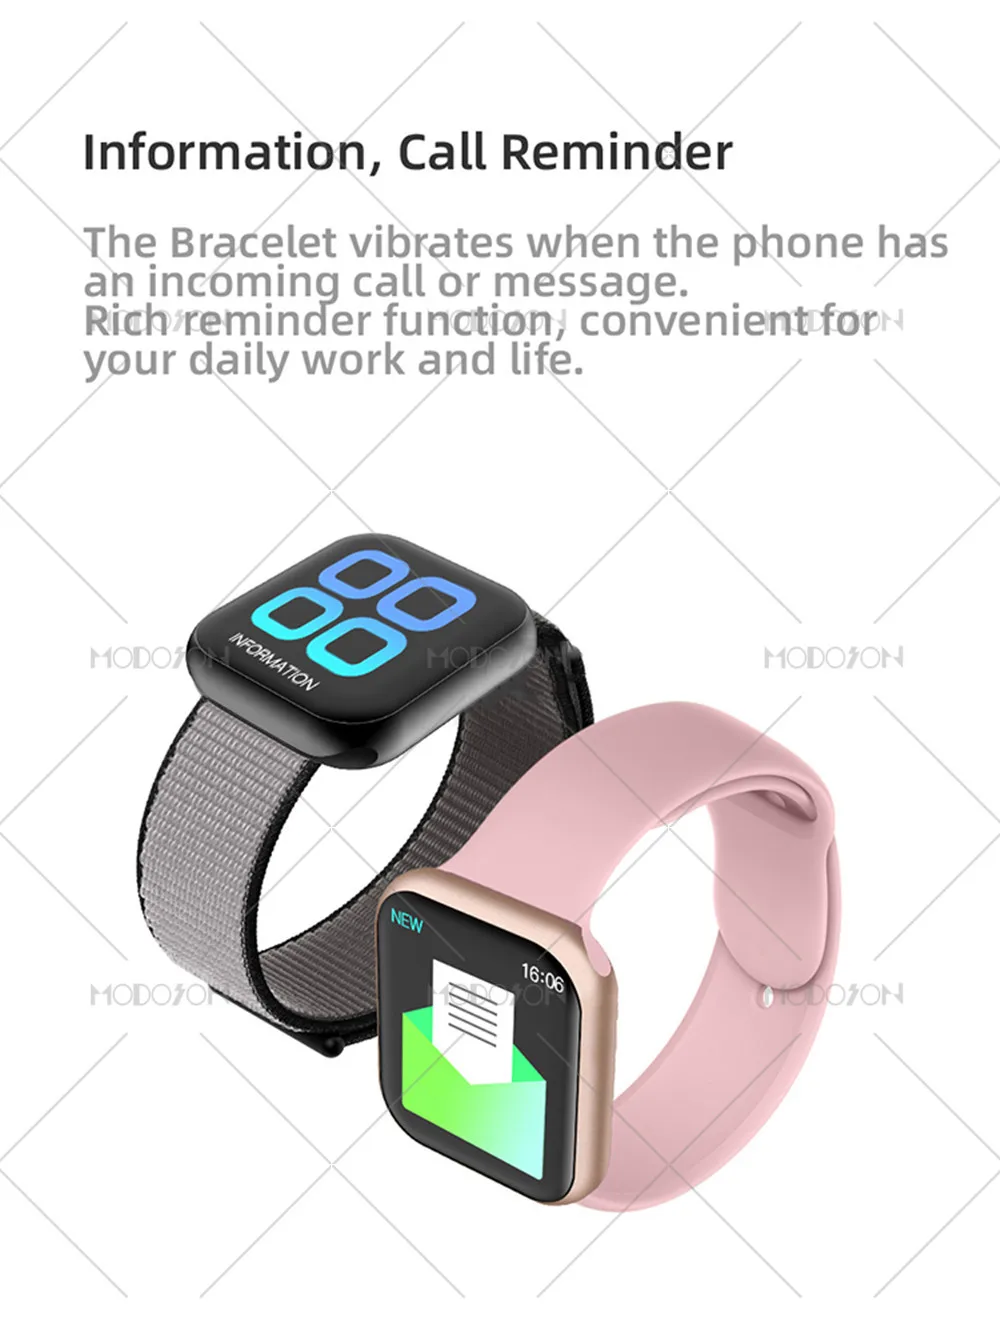 MODOSON Смарт-часы iwo 11 мини серия 5 монитор сердечного ритма браслет кровяное Кислородное давление умные часы для Apple iphone Android